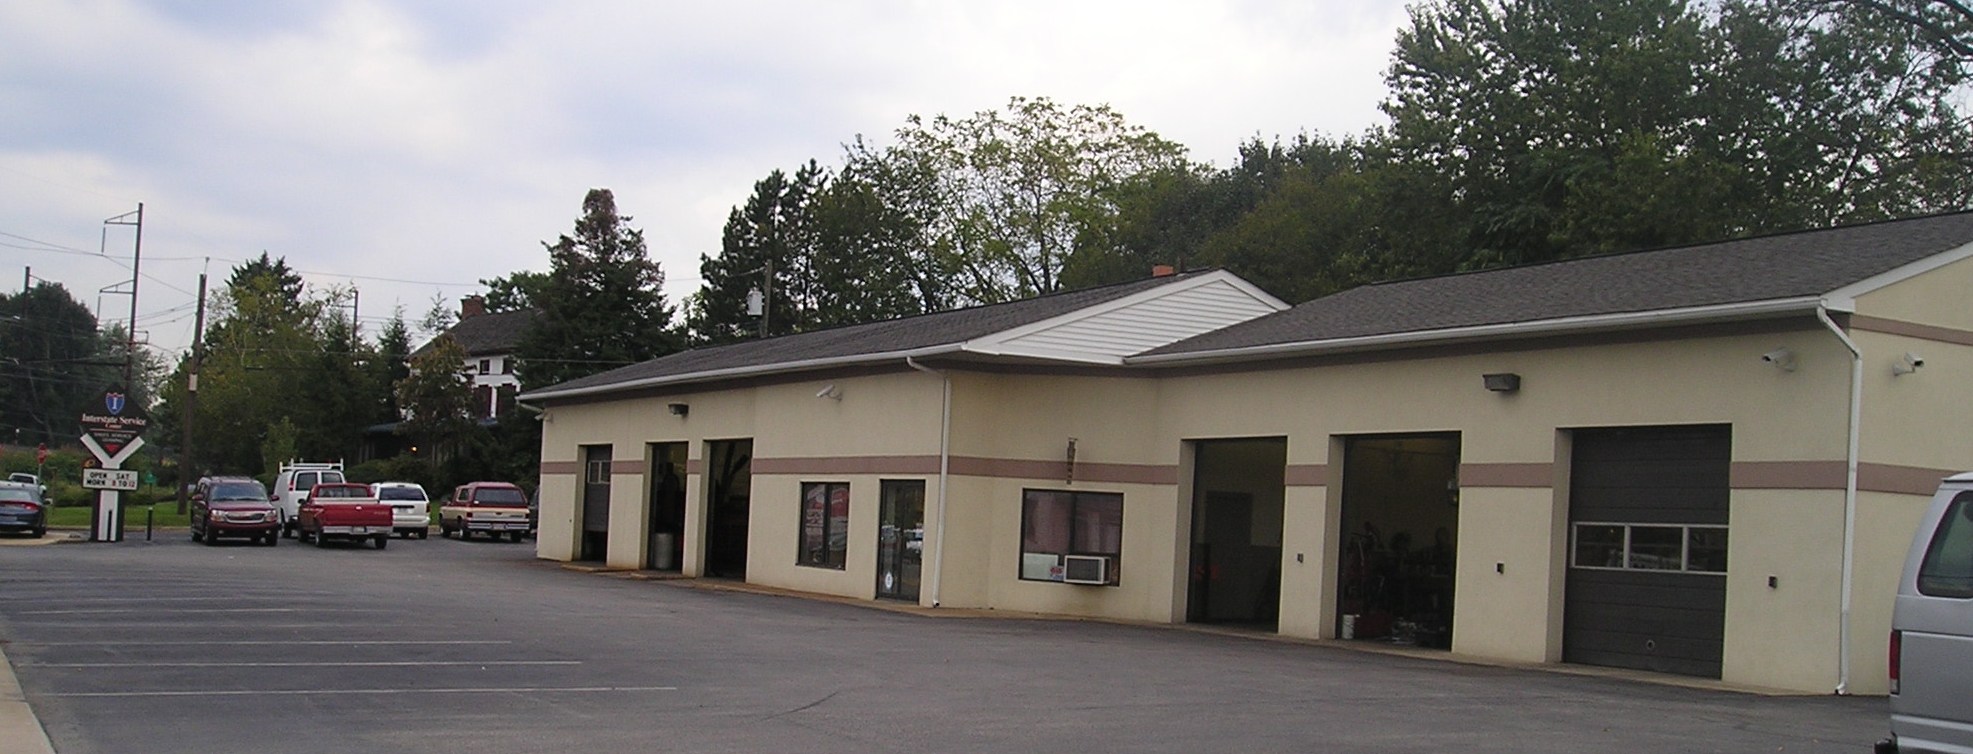 Interstate Service Center - North Hills